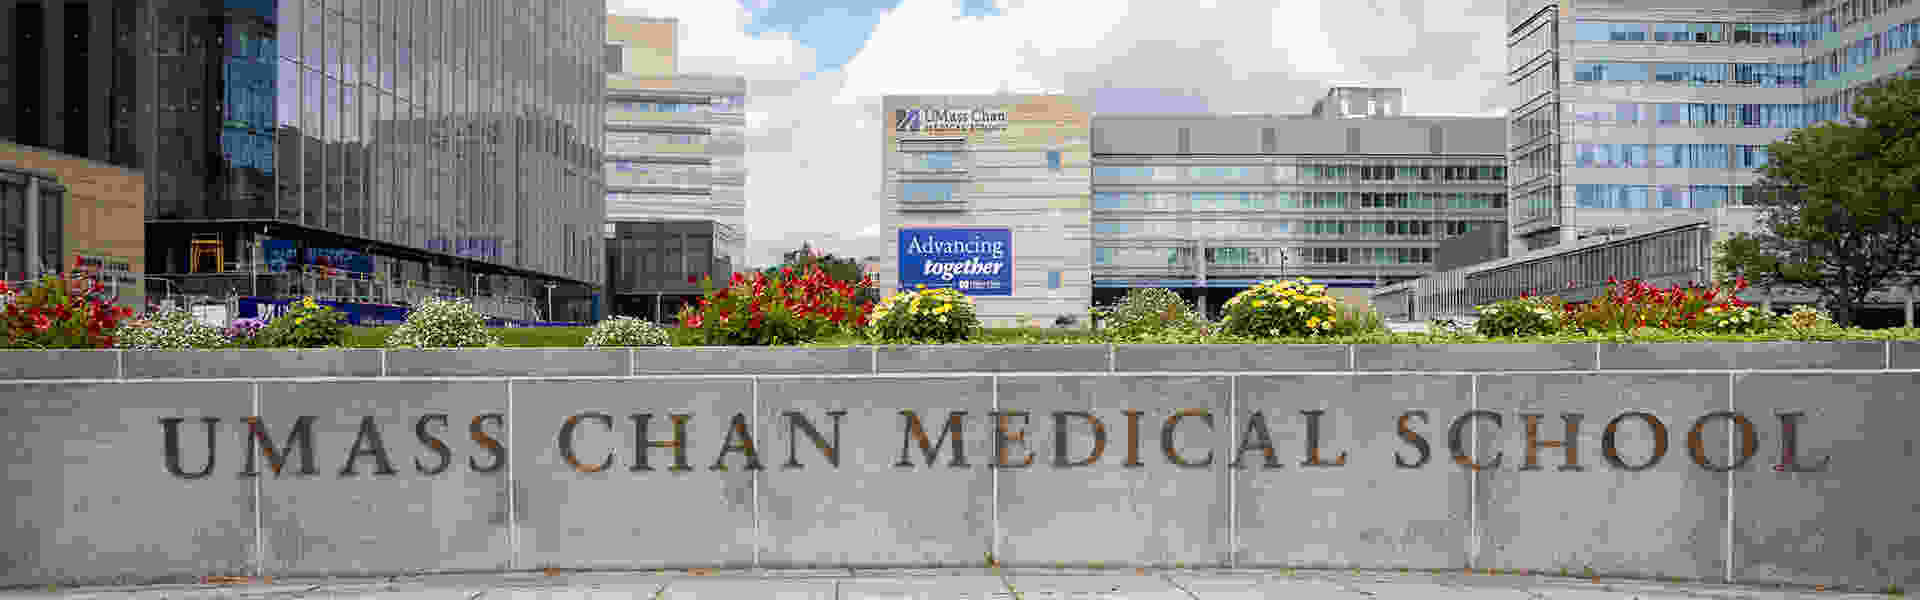 0. Hospital med new banner.jpg